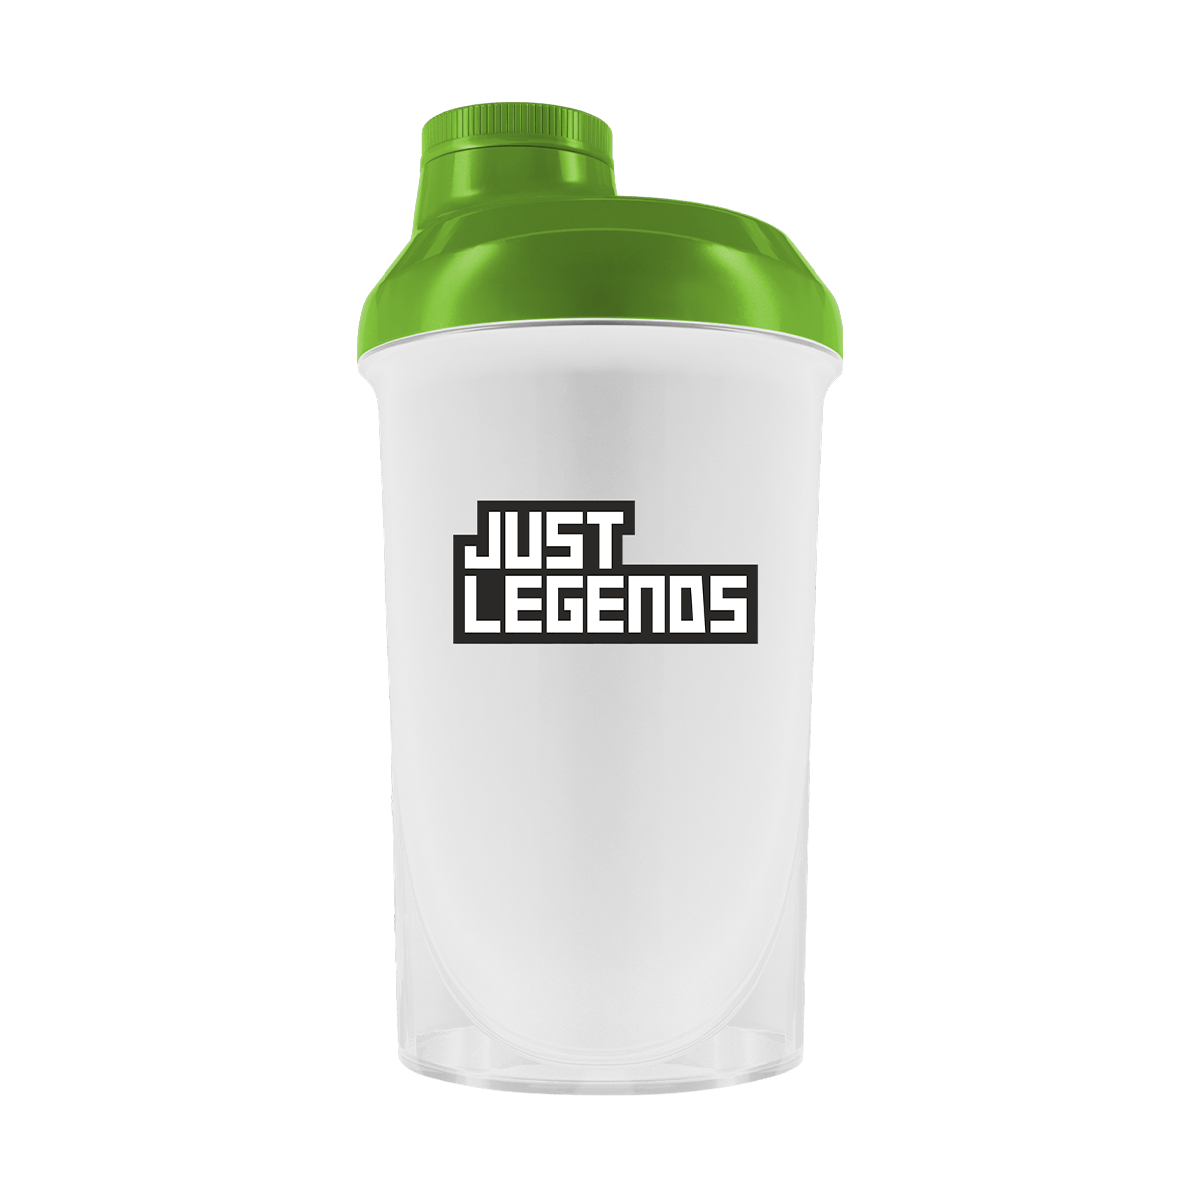 Just Legends Gratis Shaker "Graffiti Dragon" | Funktionaler, veganer Free Gift auf Pulverbasis ohne Zucker, mit wenig Kalorien, vielen Vitaminen und natürlichen Aromen.